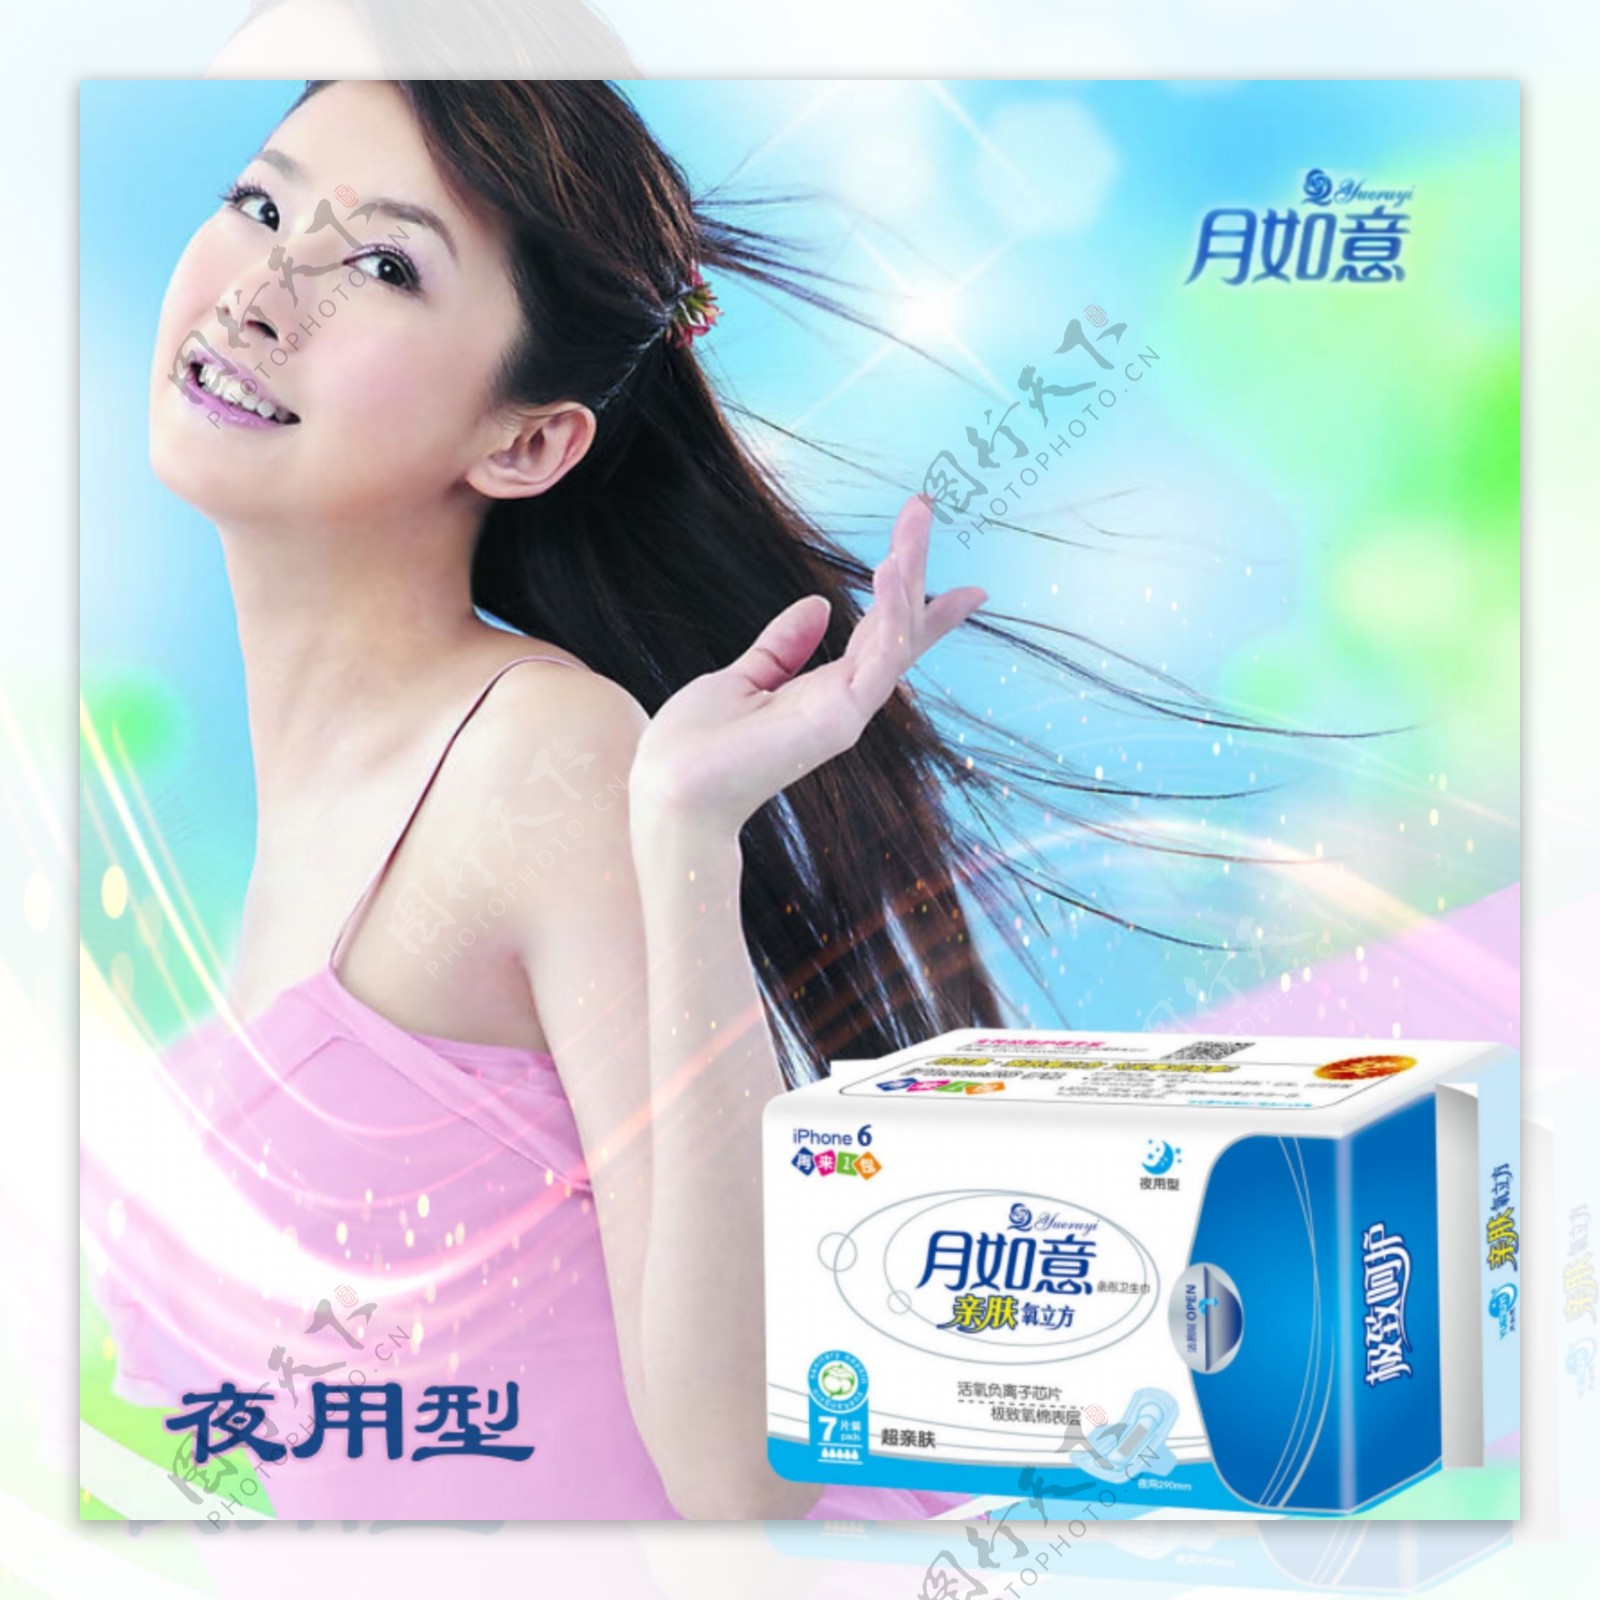 蓝紫色美女背景月如意卫生巾产品效果图广告